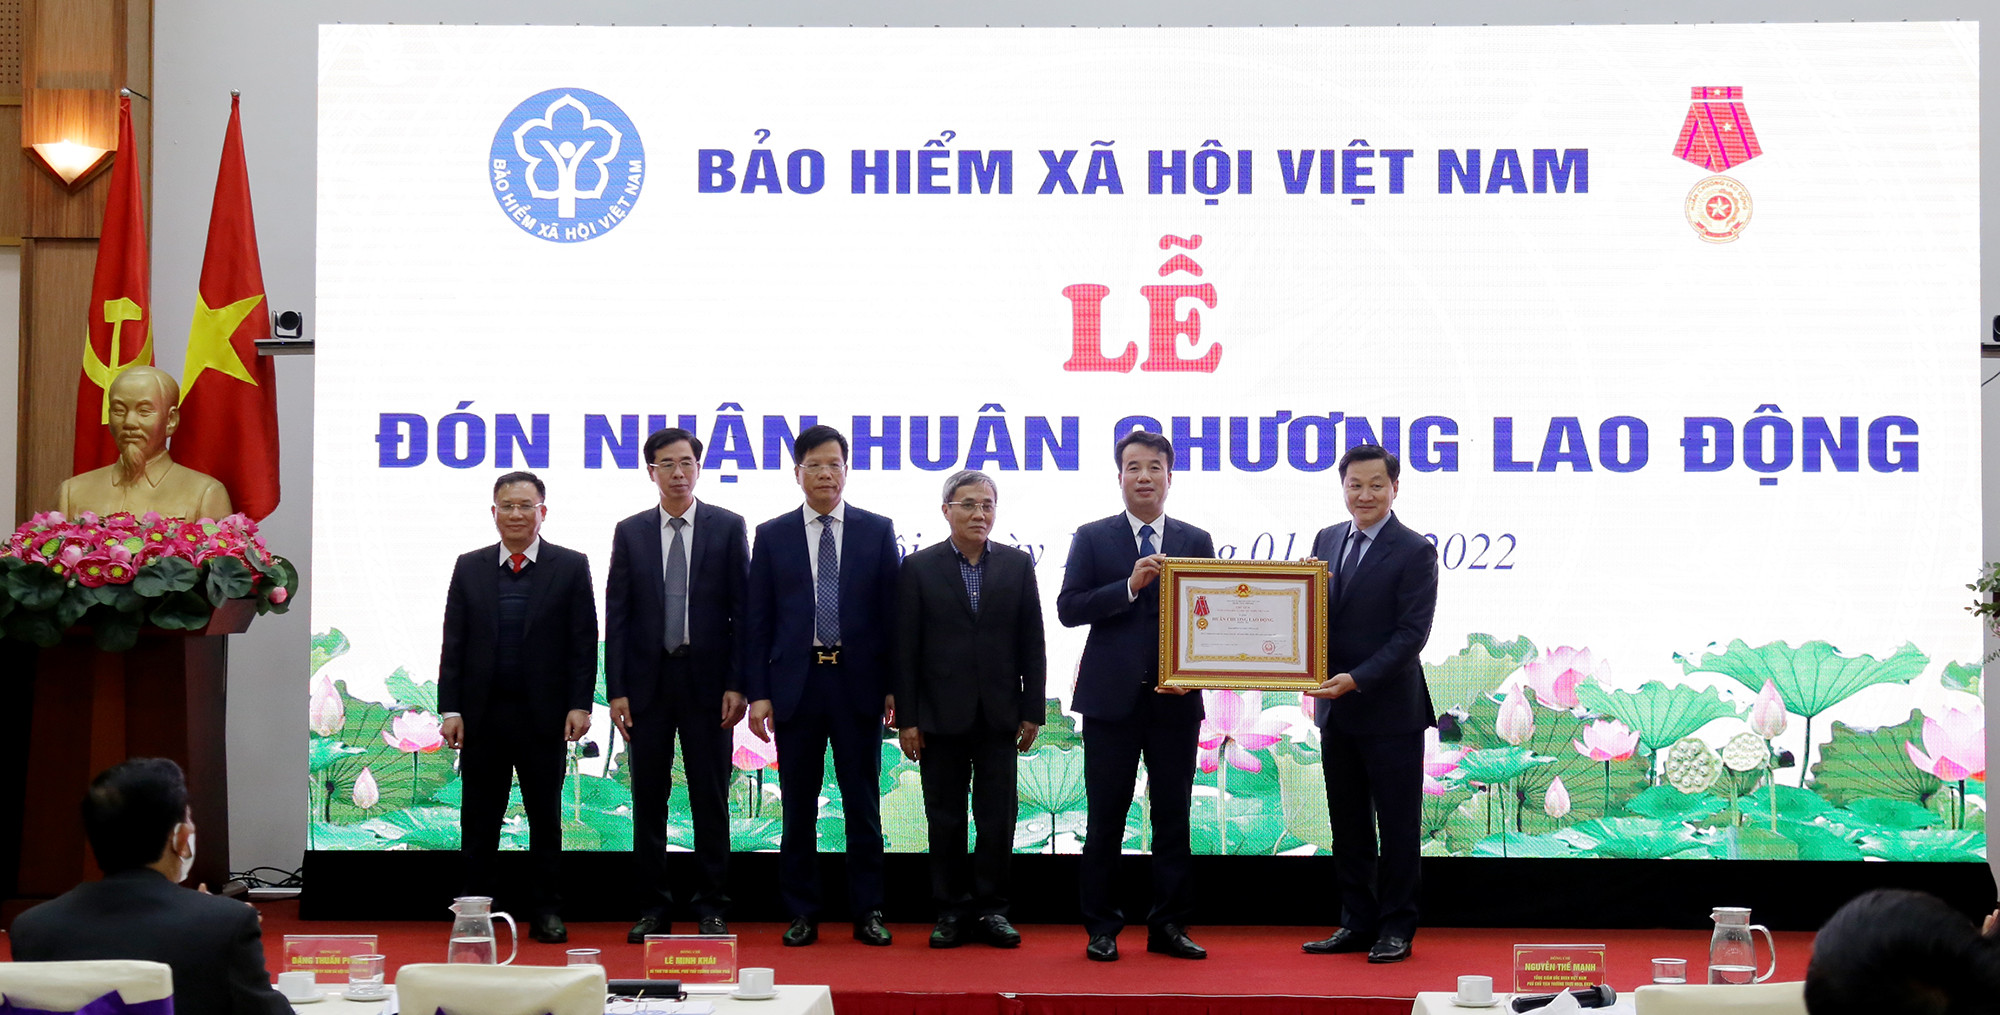 Thay mặt lãnh đạo Đảng, nhà nước và Chính phủ, Phó Thủ tướng Lê Minh Khái trao tặng Huân chương Lao động hạng Ba cho ngành BHXH Việt Nam. Ảnh: BHXH Việt Nam cung cấp